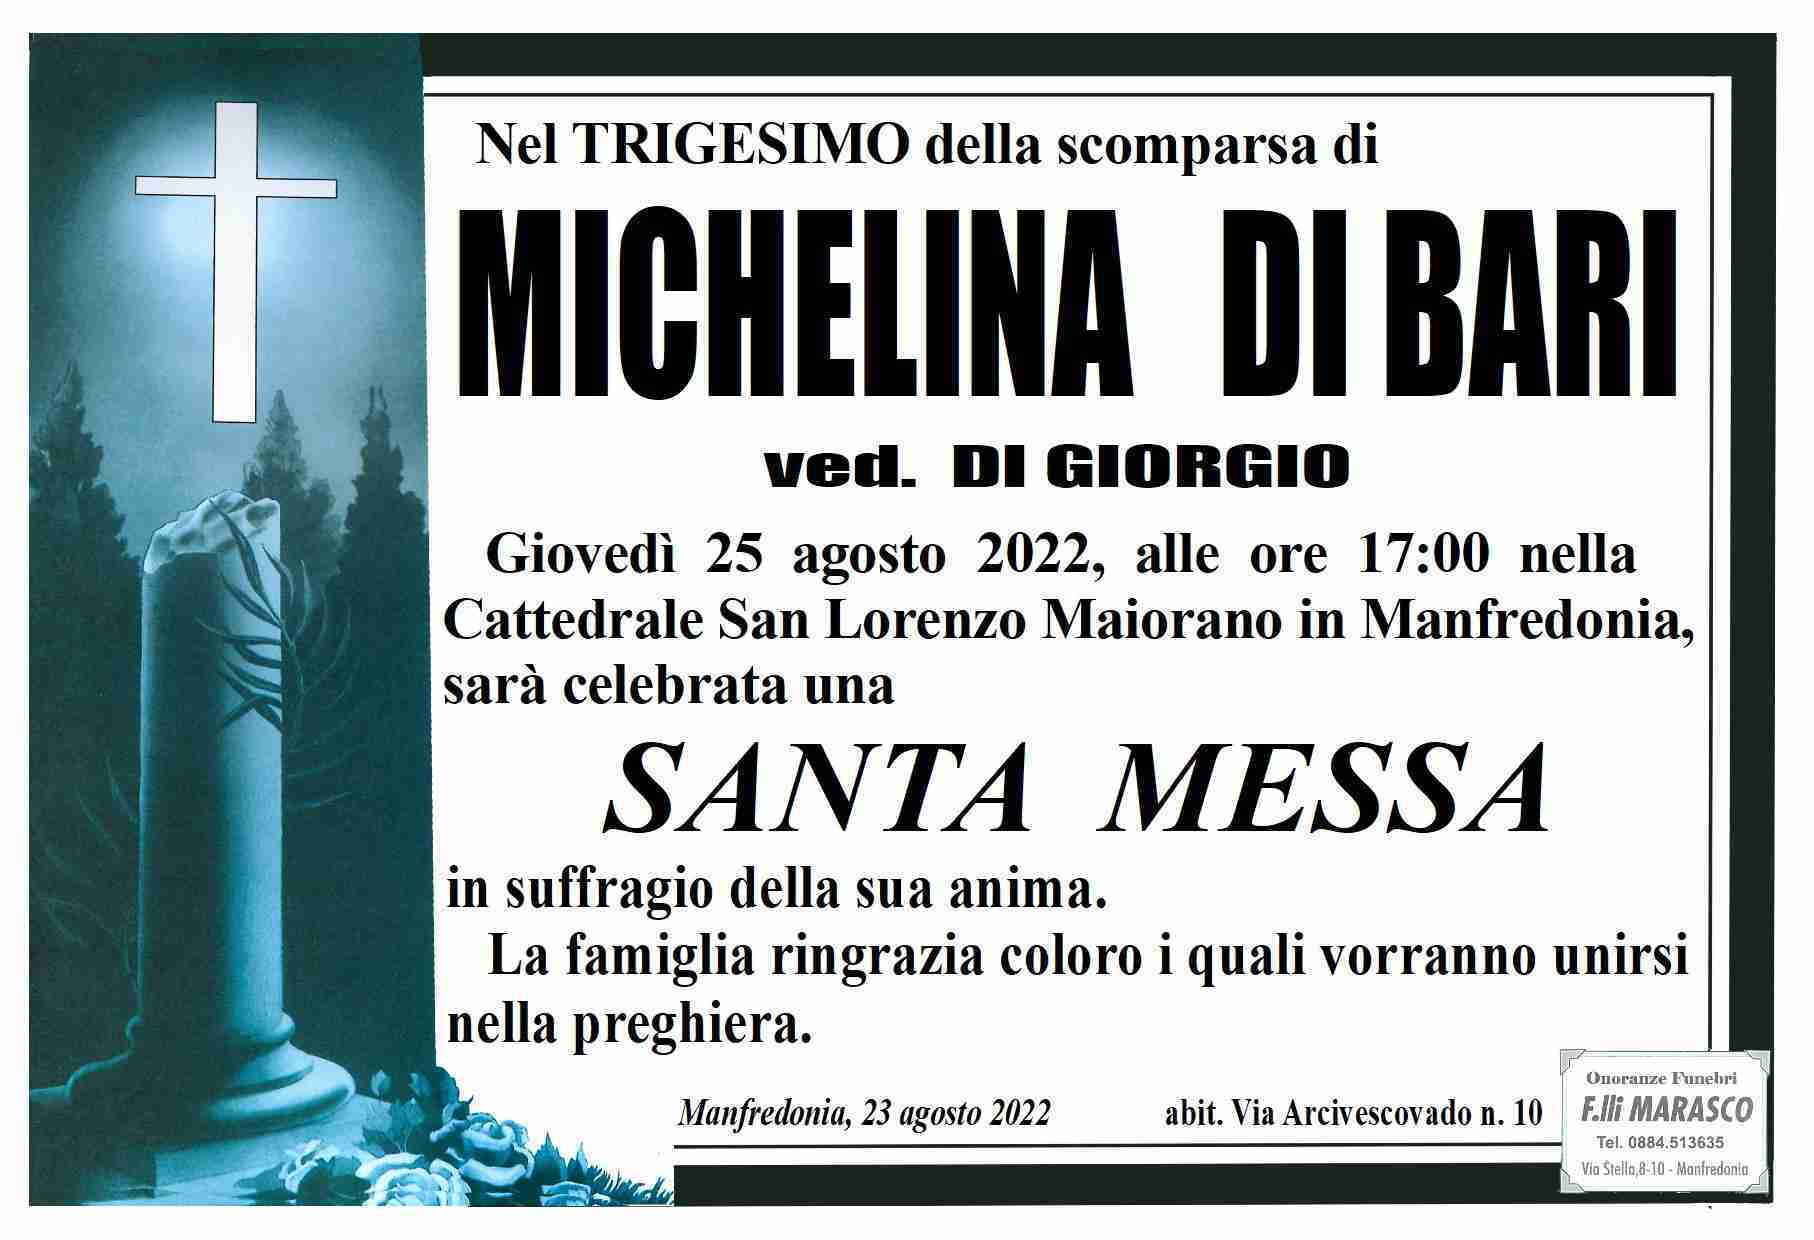 Michelina Di Bari